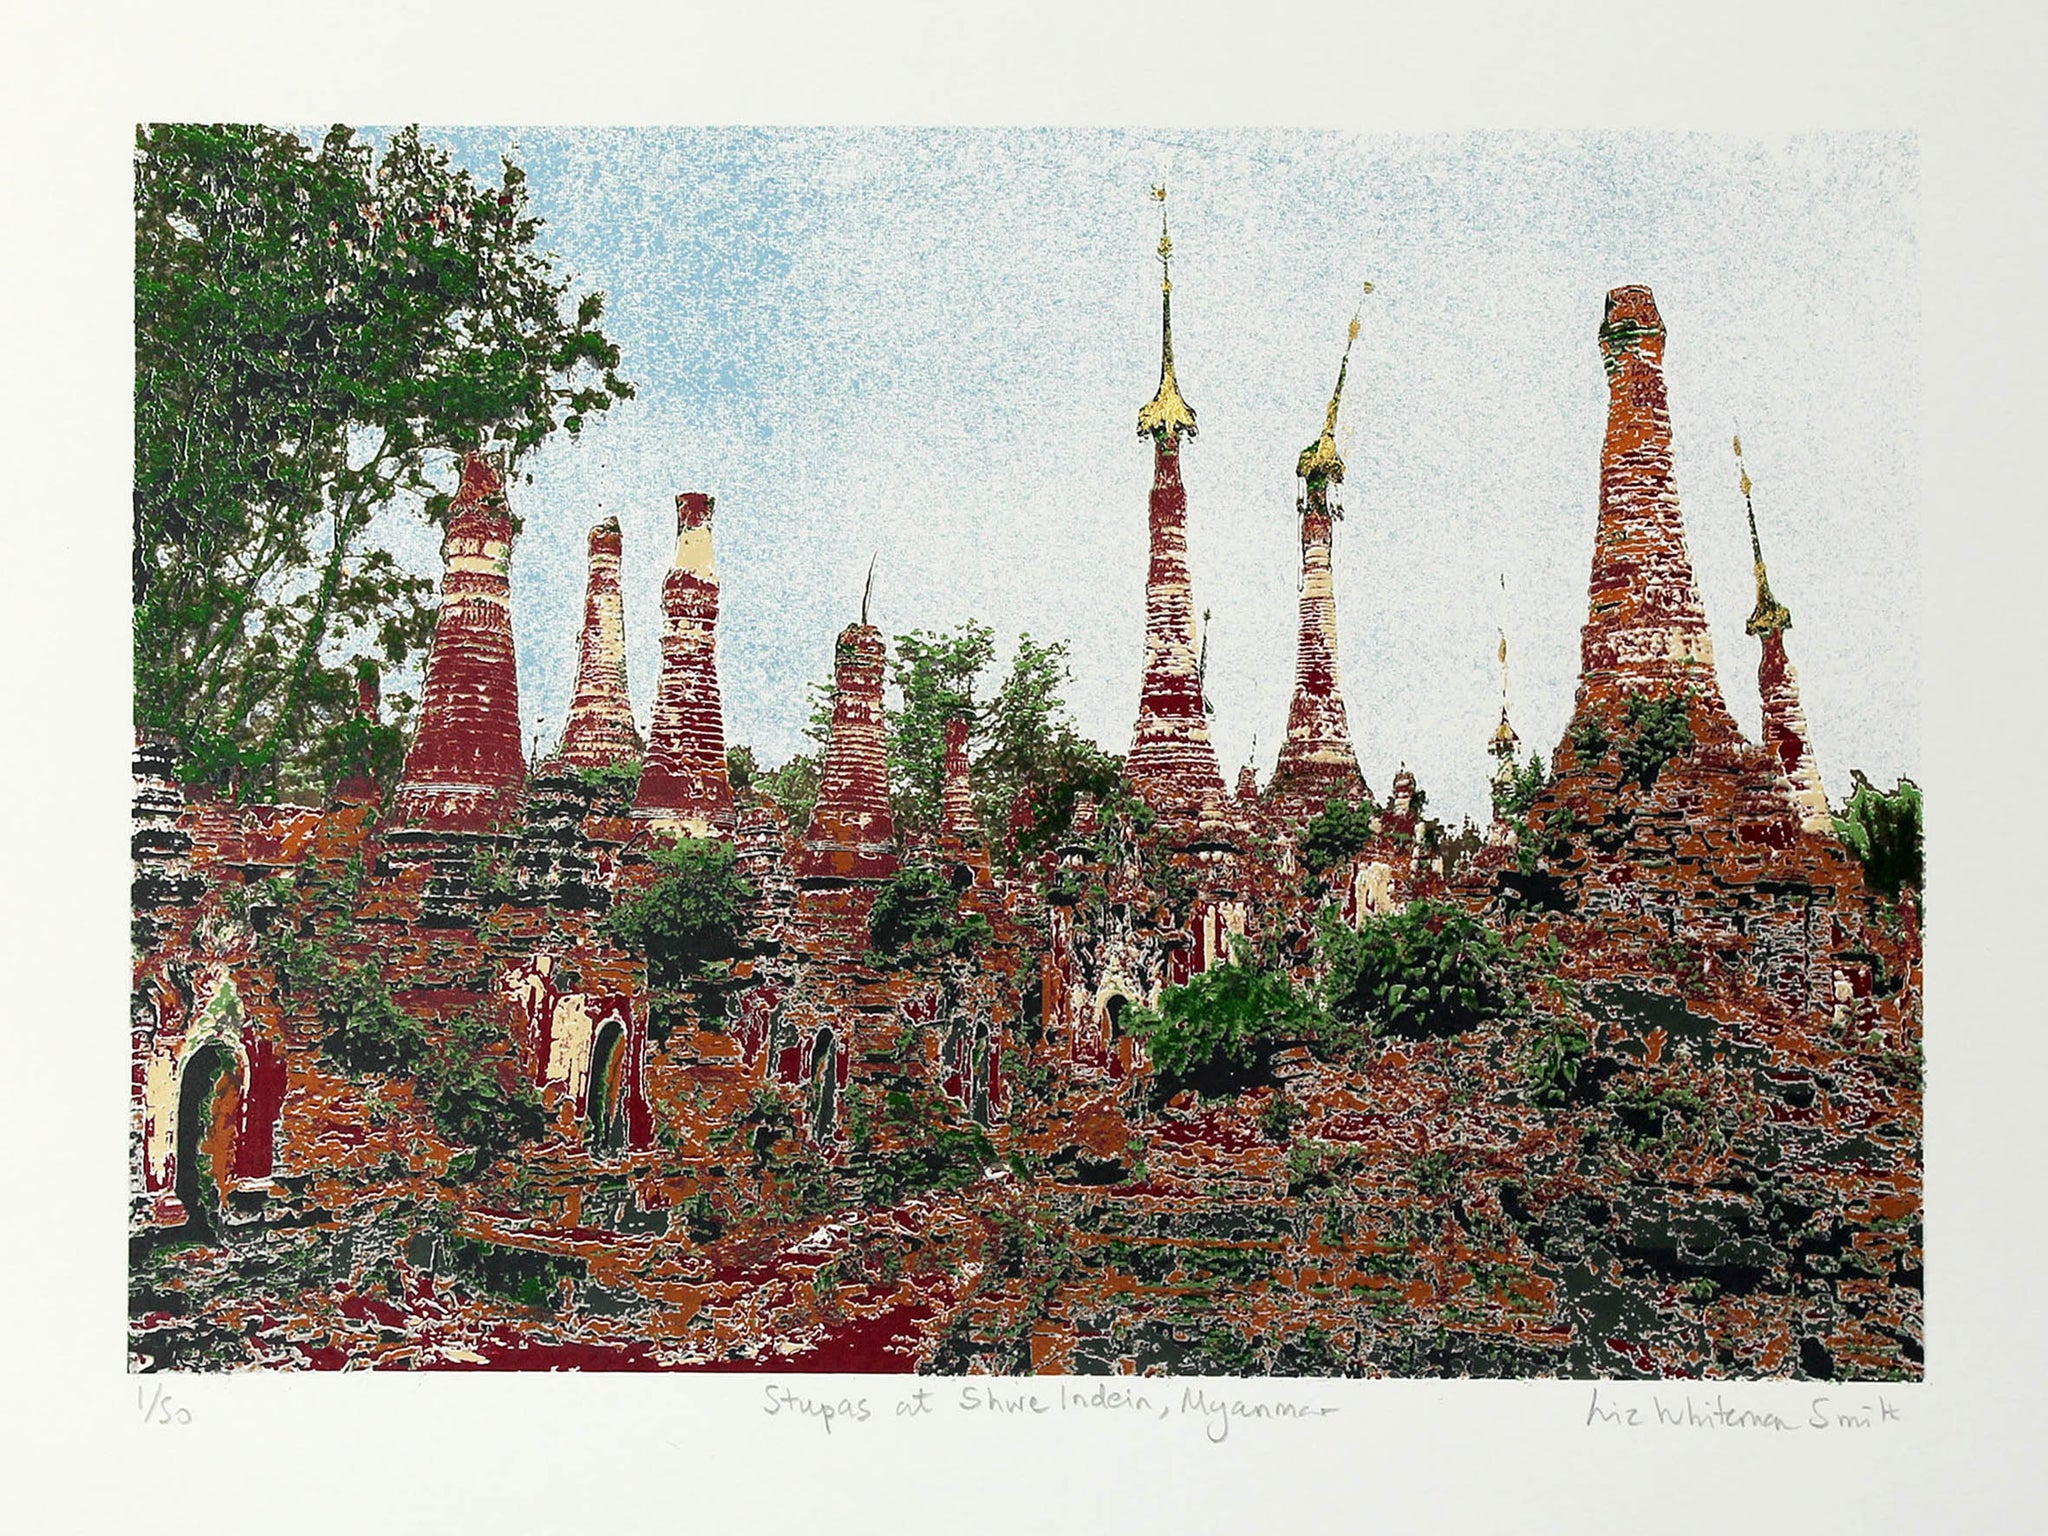 Stupas in a Myanmar graveyard